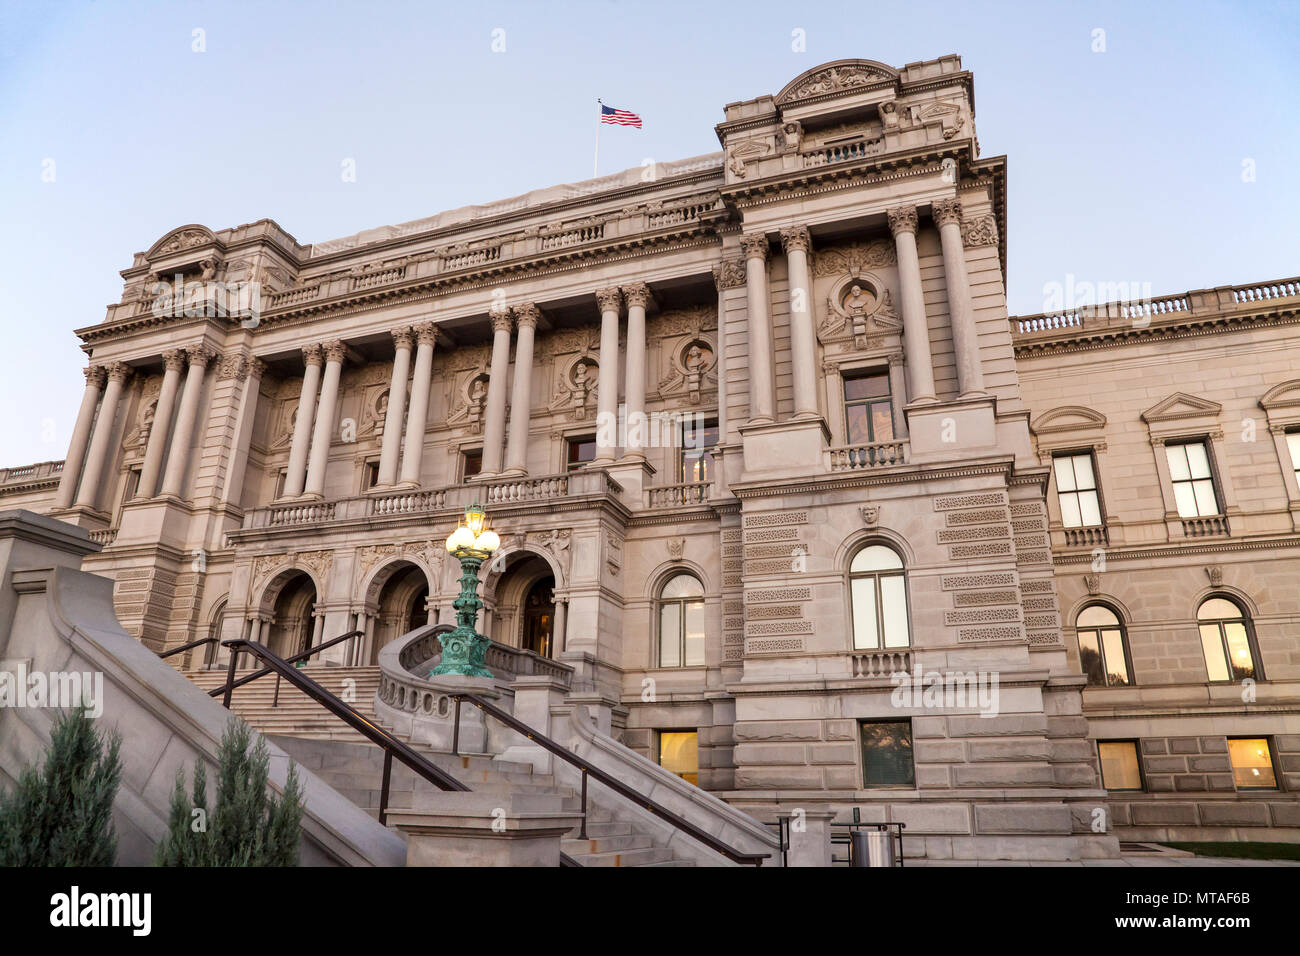 Facade of Jefferson Building, Washington DC, USA Stock Photo